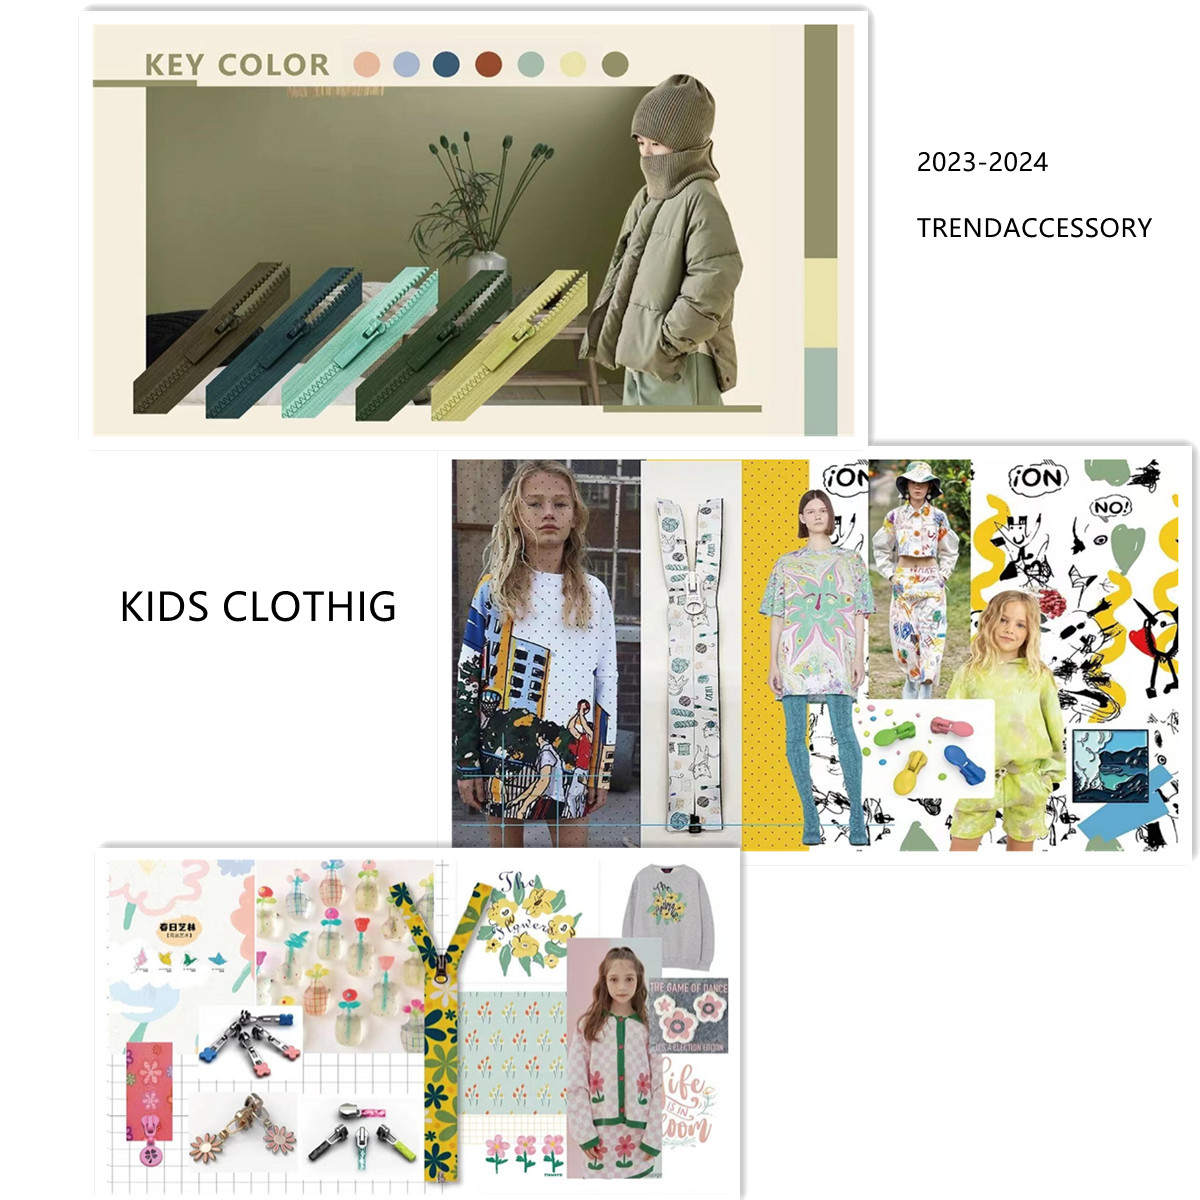 А вы знаете, какой модный аксессуар для детской одежды 2023-2024 (коллекция 1)